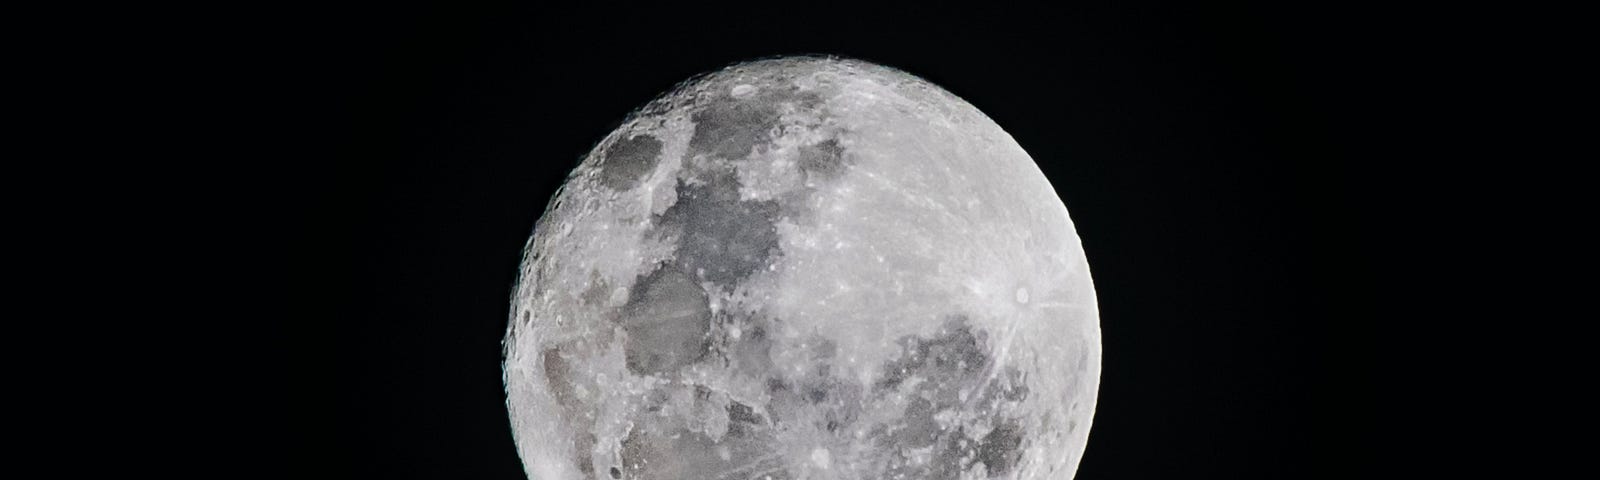 Imagem mostra a lua